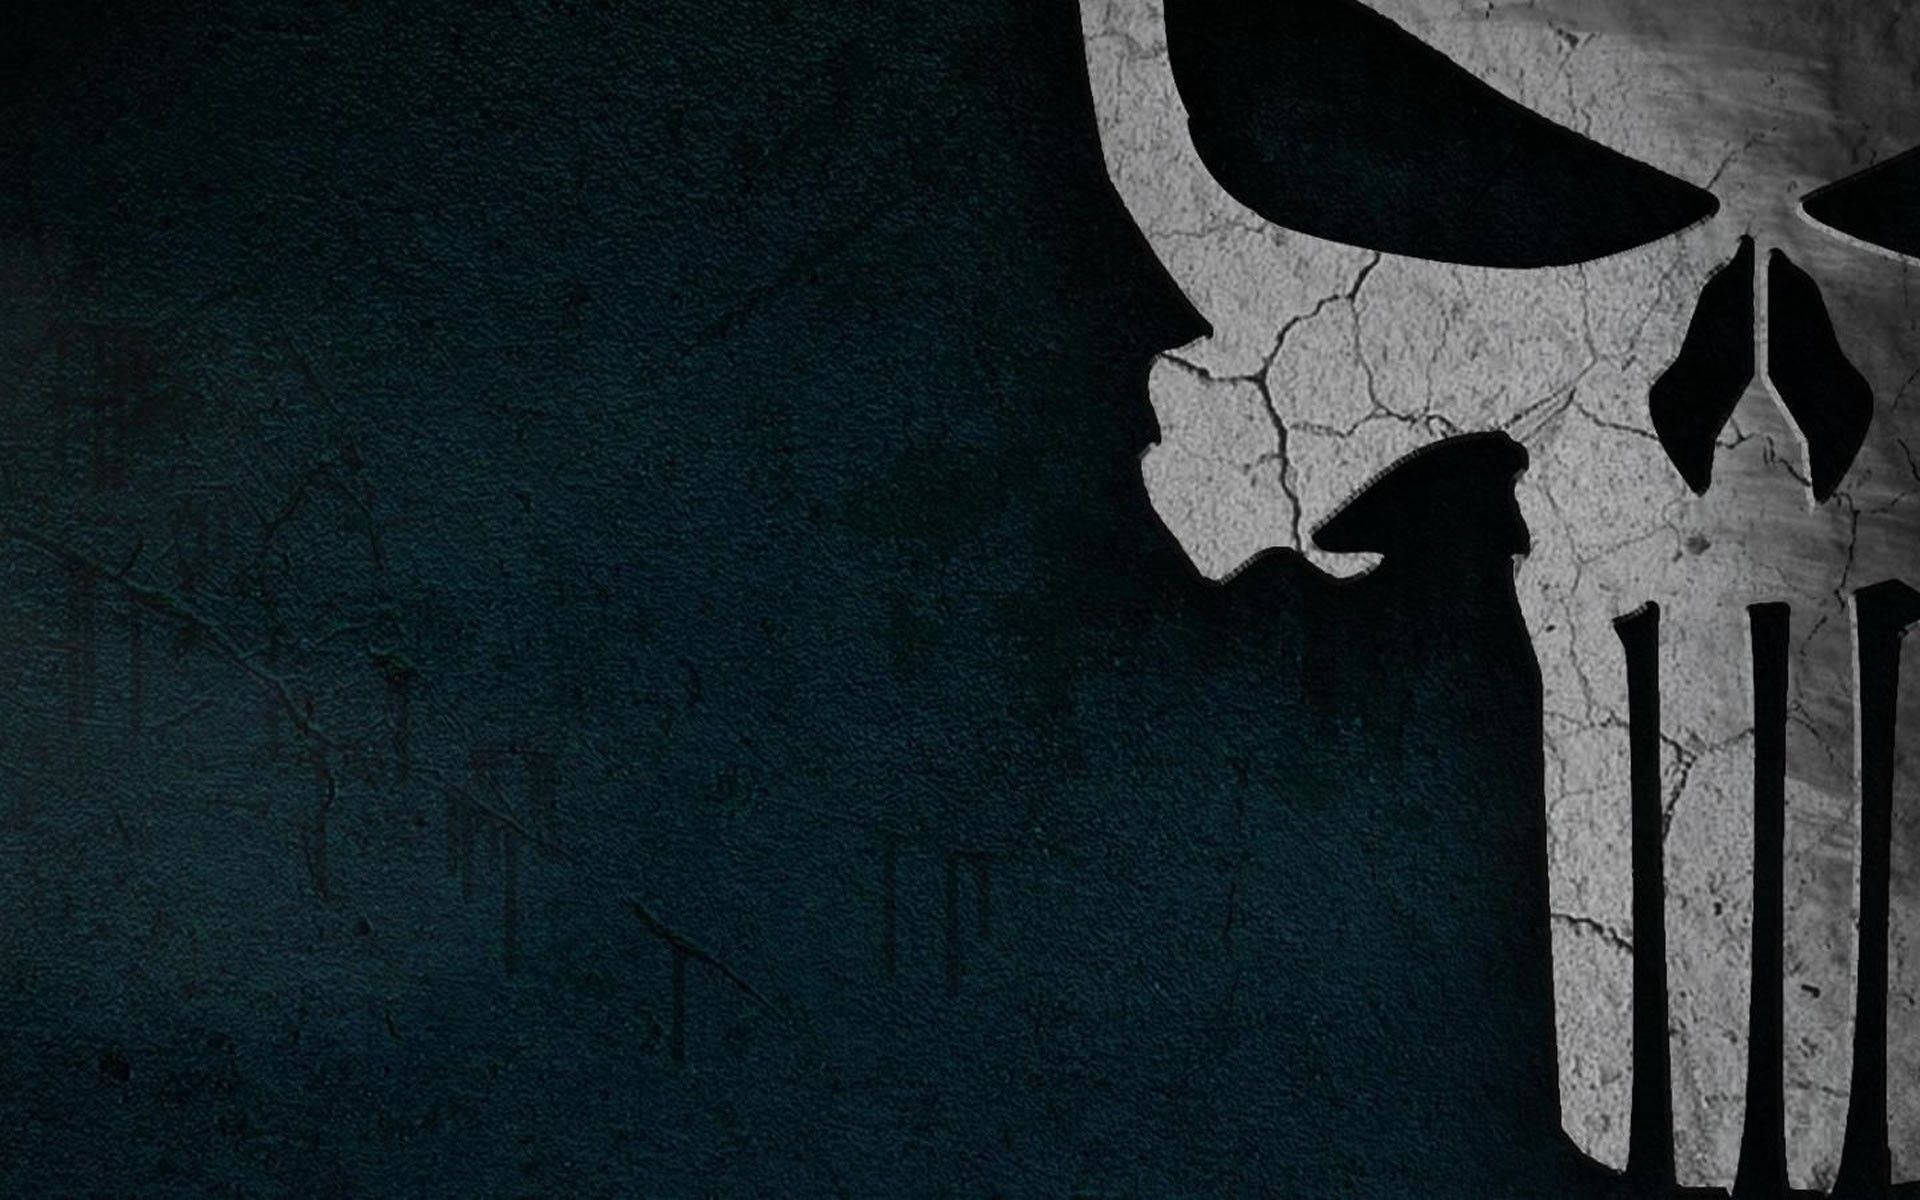 Teal Offset Half Punisher Skull Background